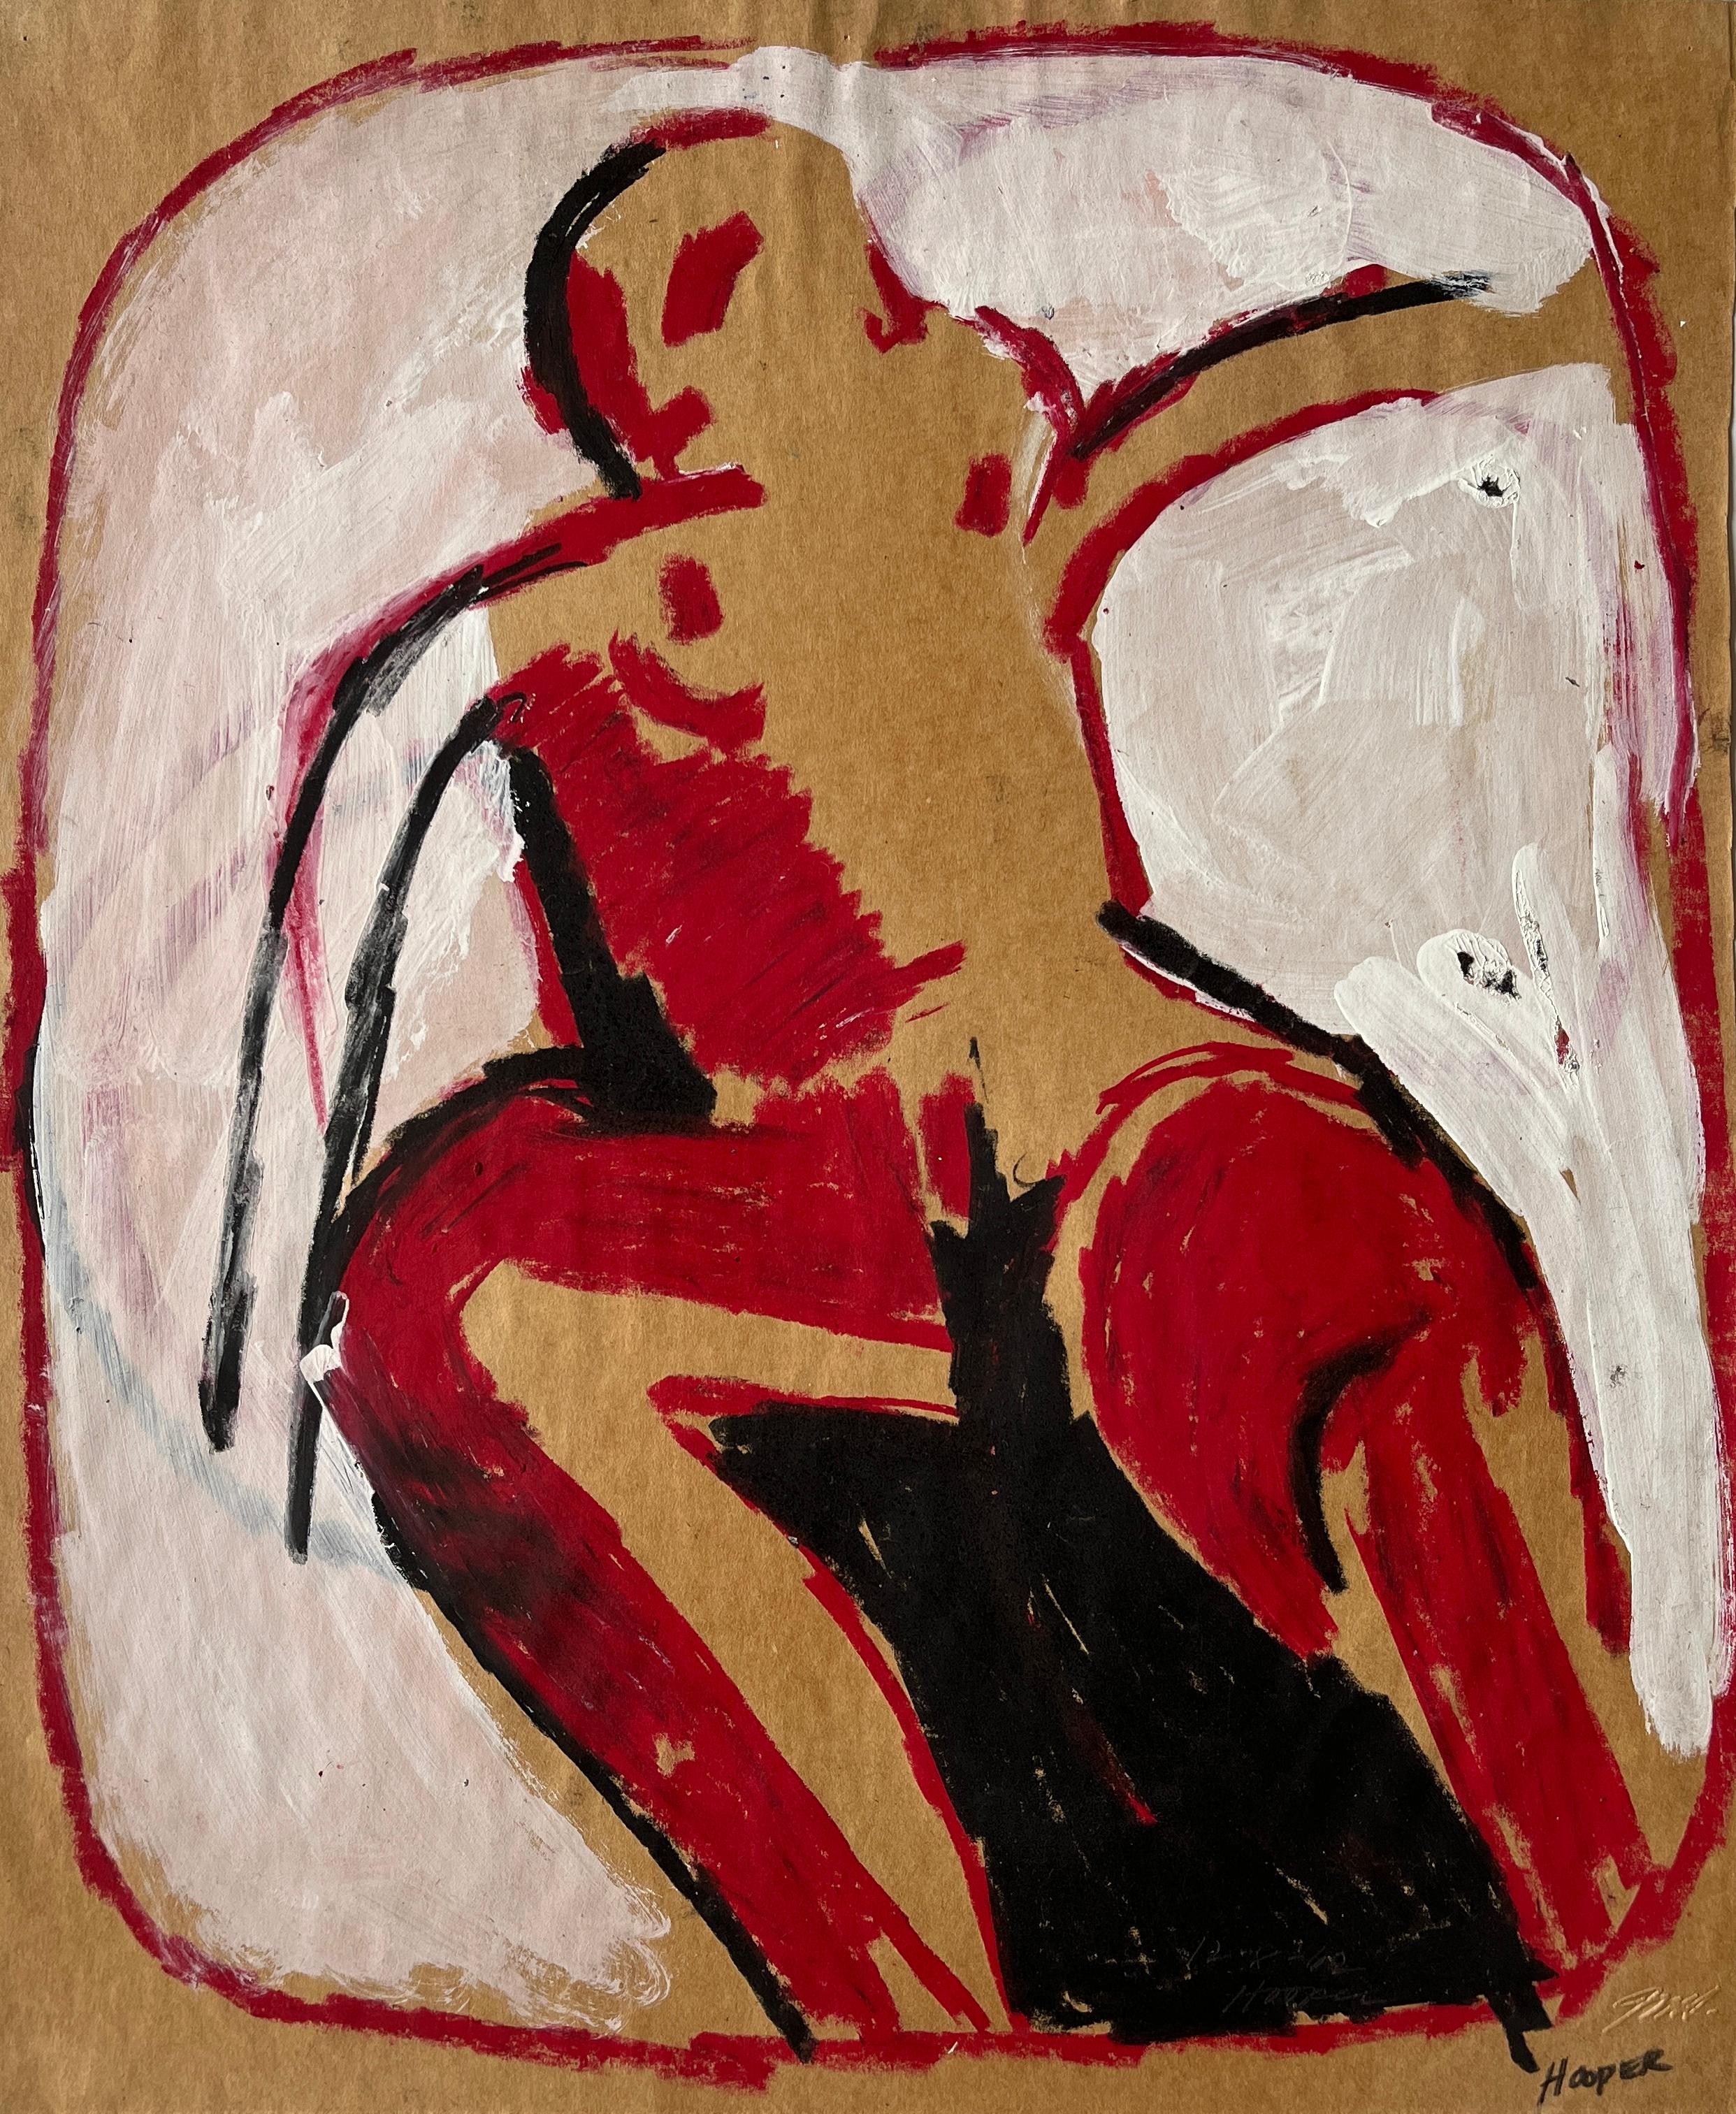 Jack Hooper
"Nu dans une bulle"
c. 1960
Gouache et pastel sur papier
15 "x18" sans cadre
Signé au crayon en bas à gauche

L'œuvre d'art abstraite de Jack Whiting, qui représente une figure aux contours noirs et aux éclaboussures dynamiques de rouge